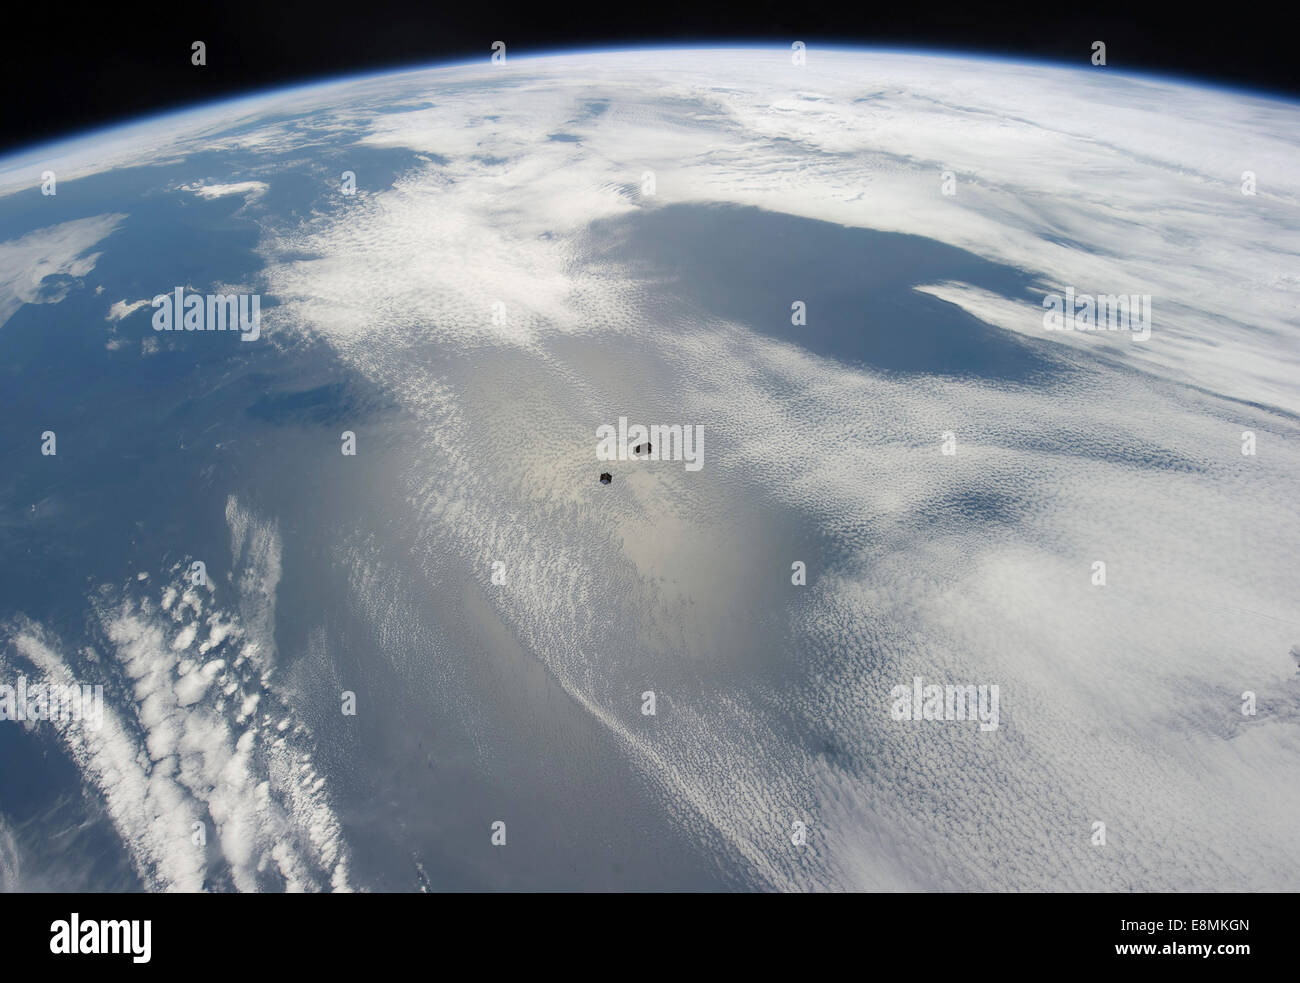 4 octobre 2012 - Plusieurs satellites minuscules backdropped bleu et blanc par une partie de la Terre. Banque D'Images